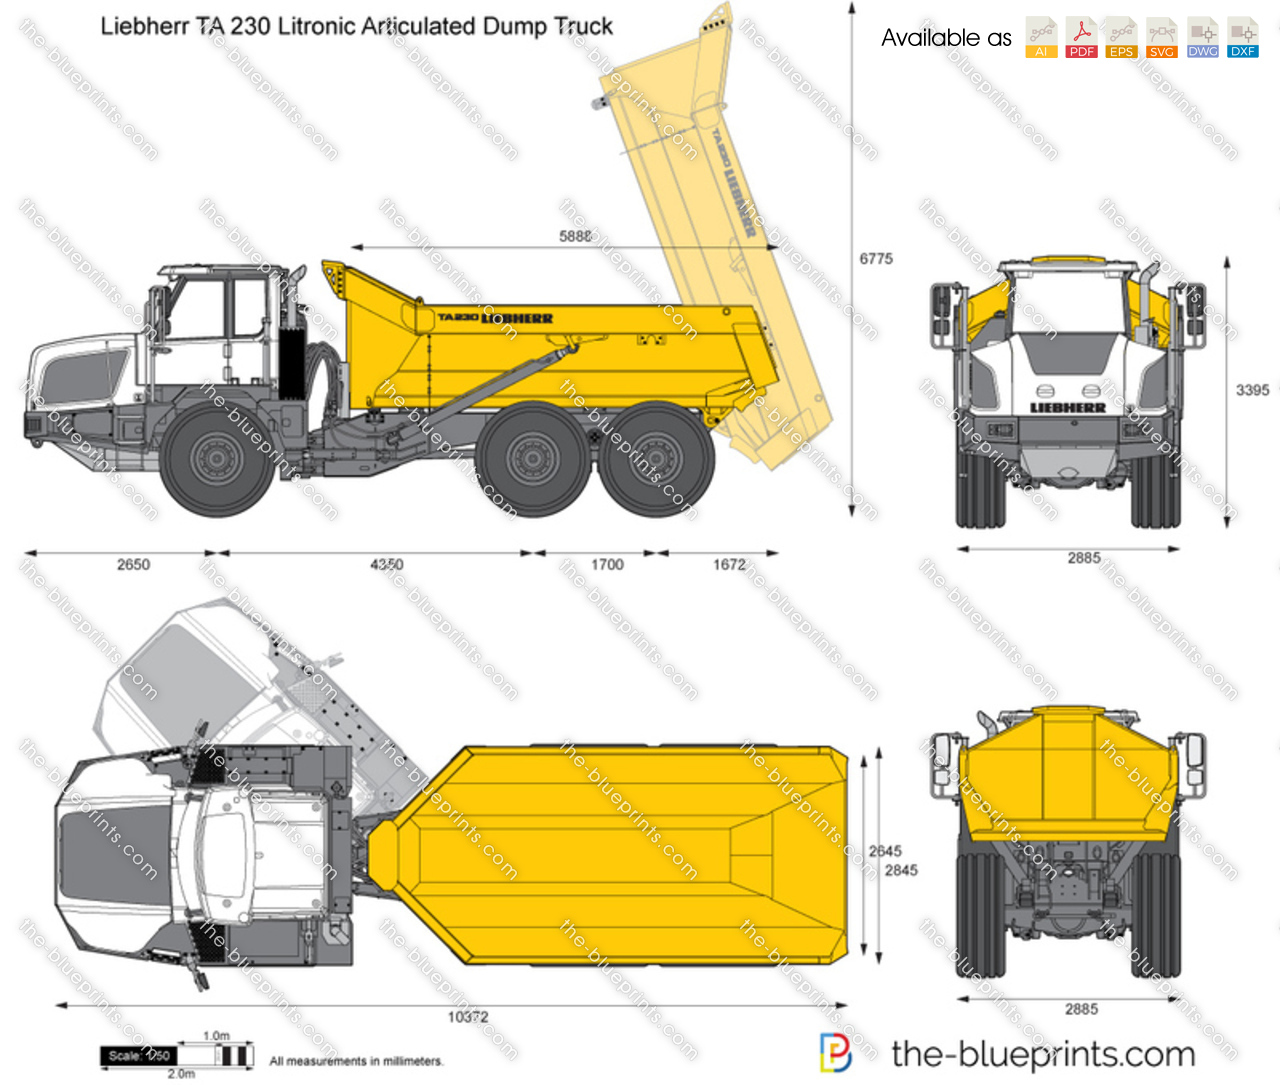 Liebherr TA 230 Litronic Articulated Dump Truck